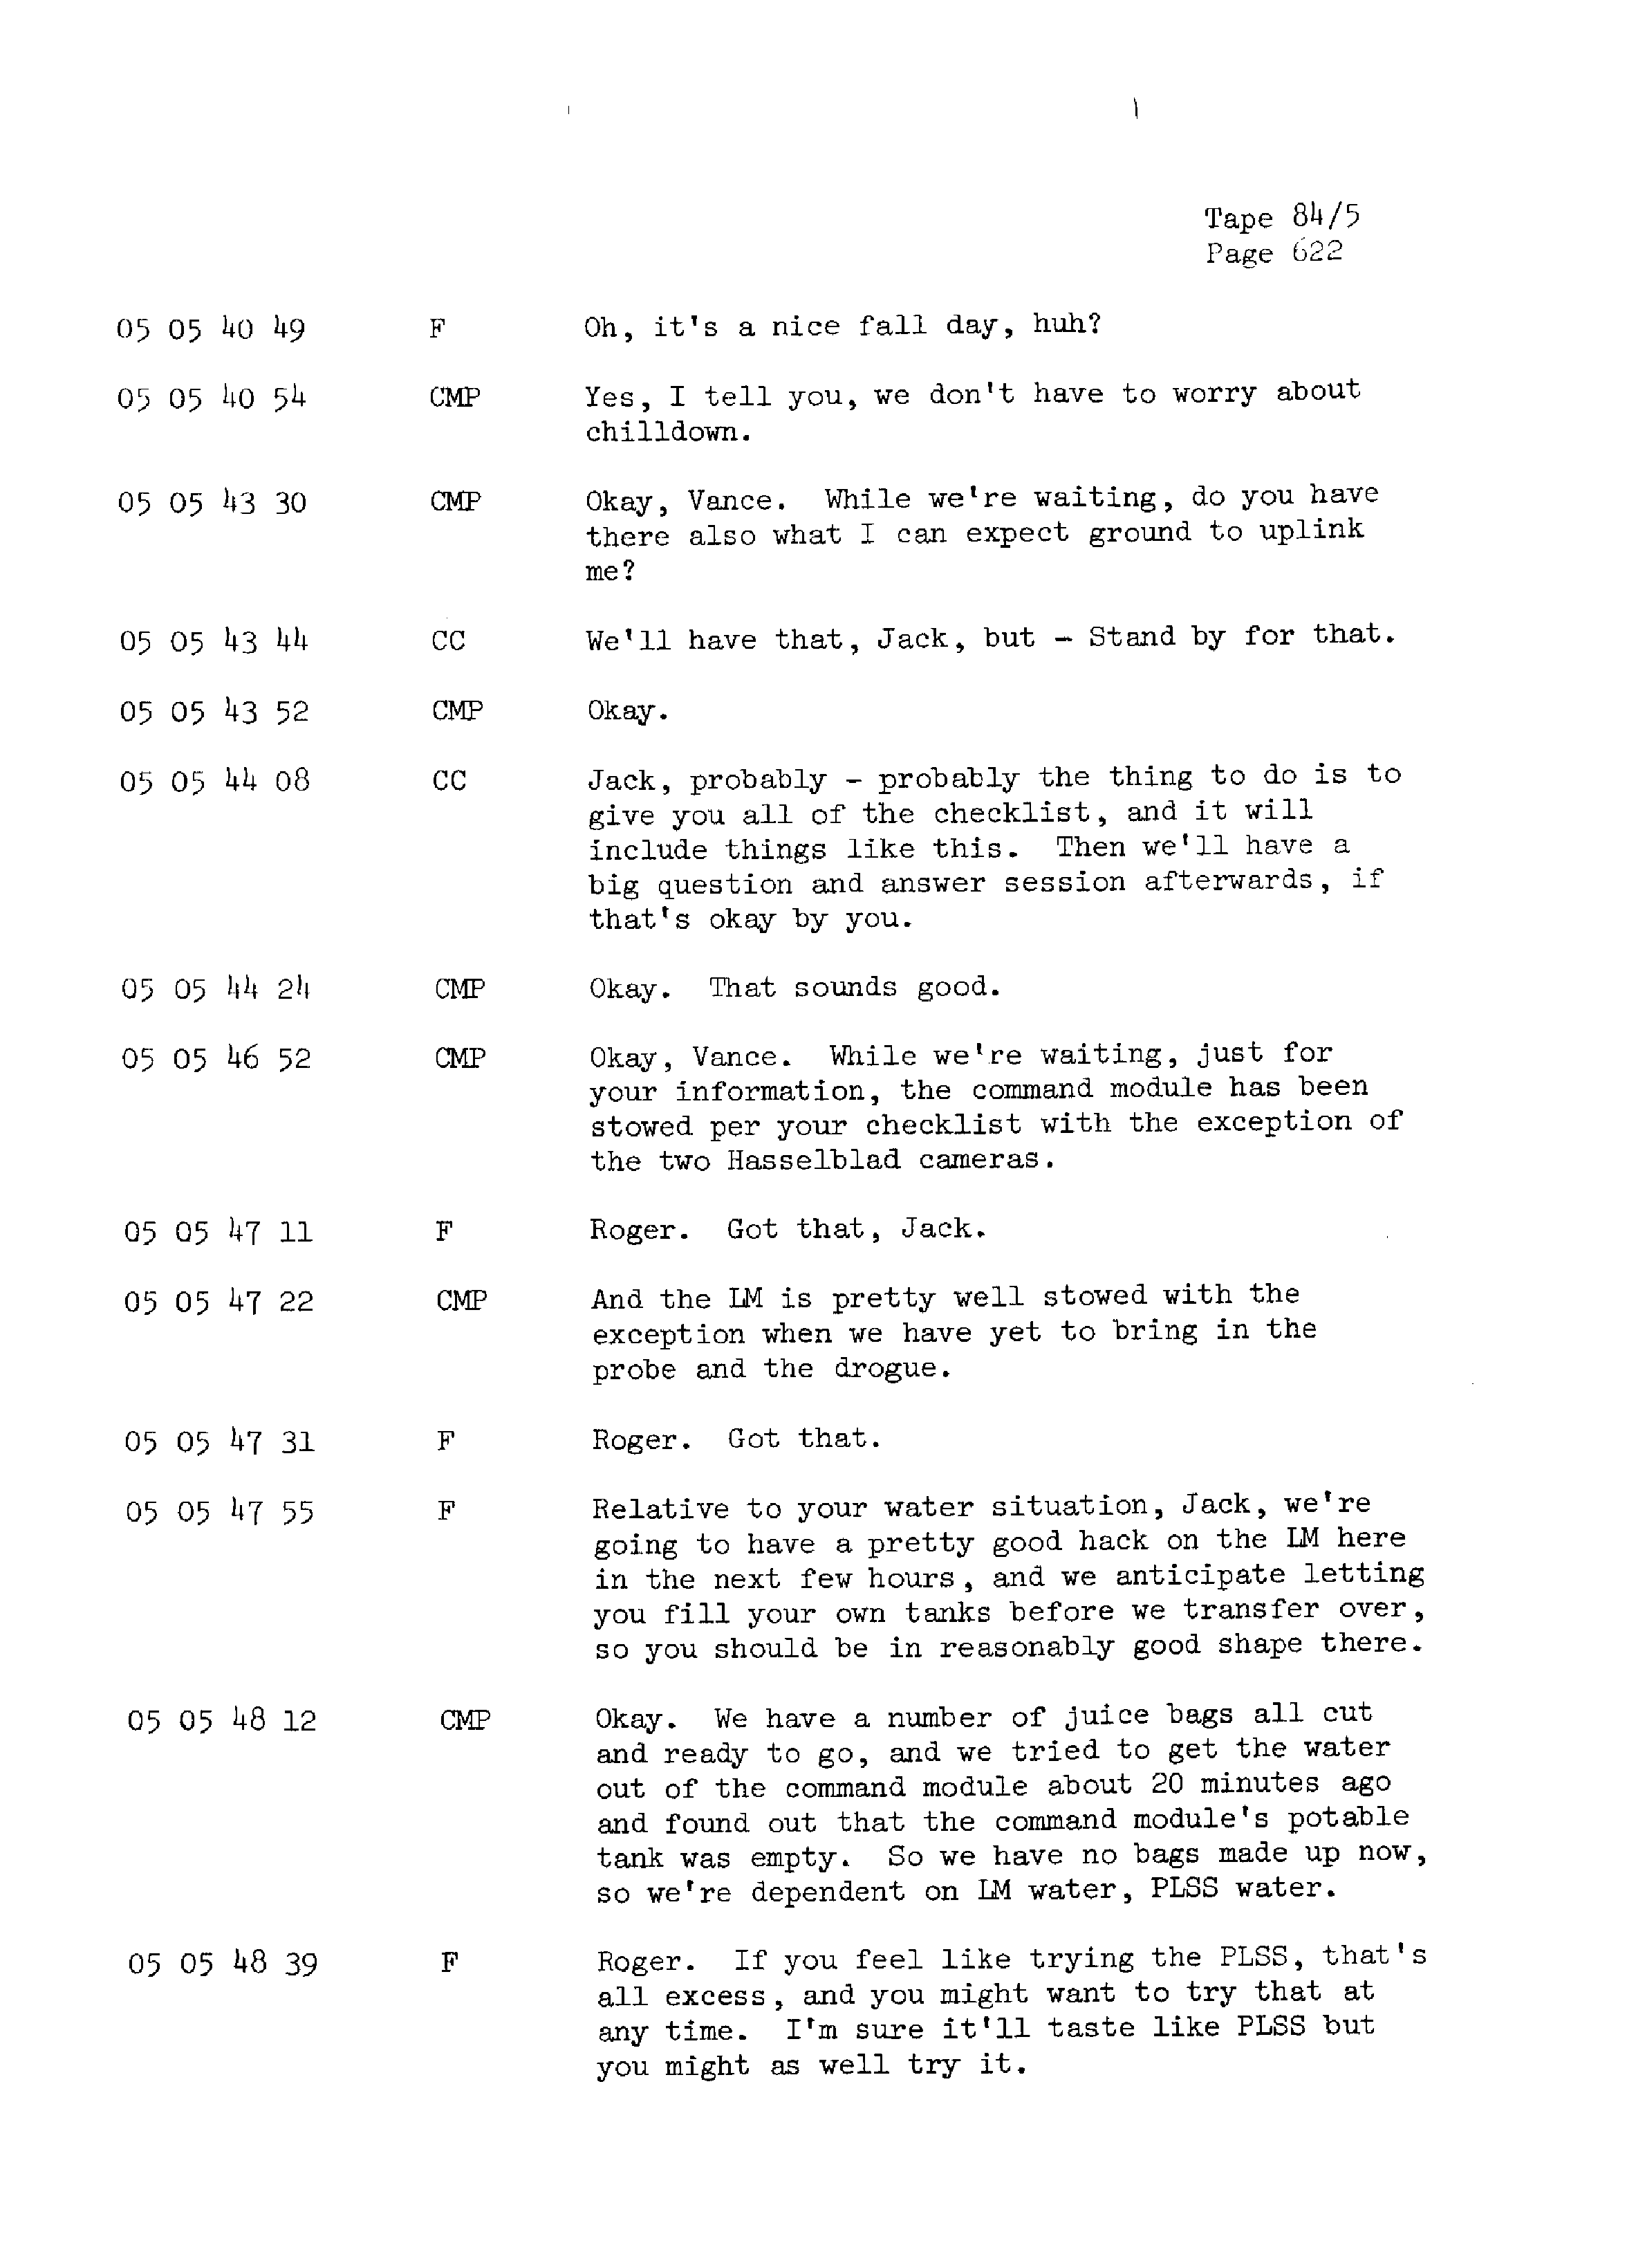 Page 629 of Apollo 13’s original transcript